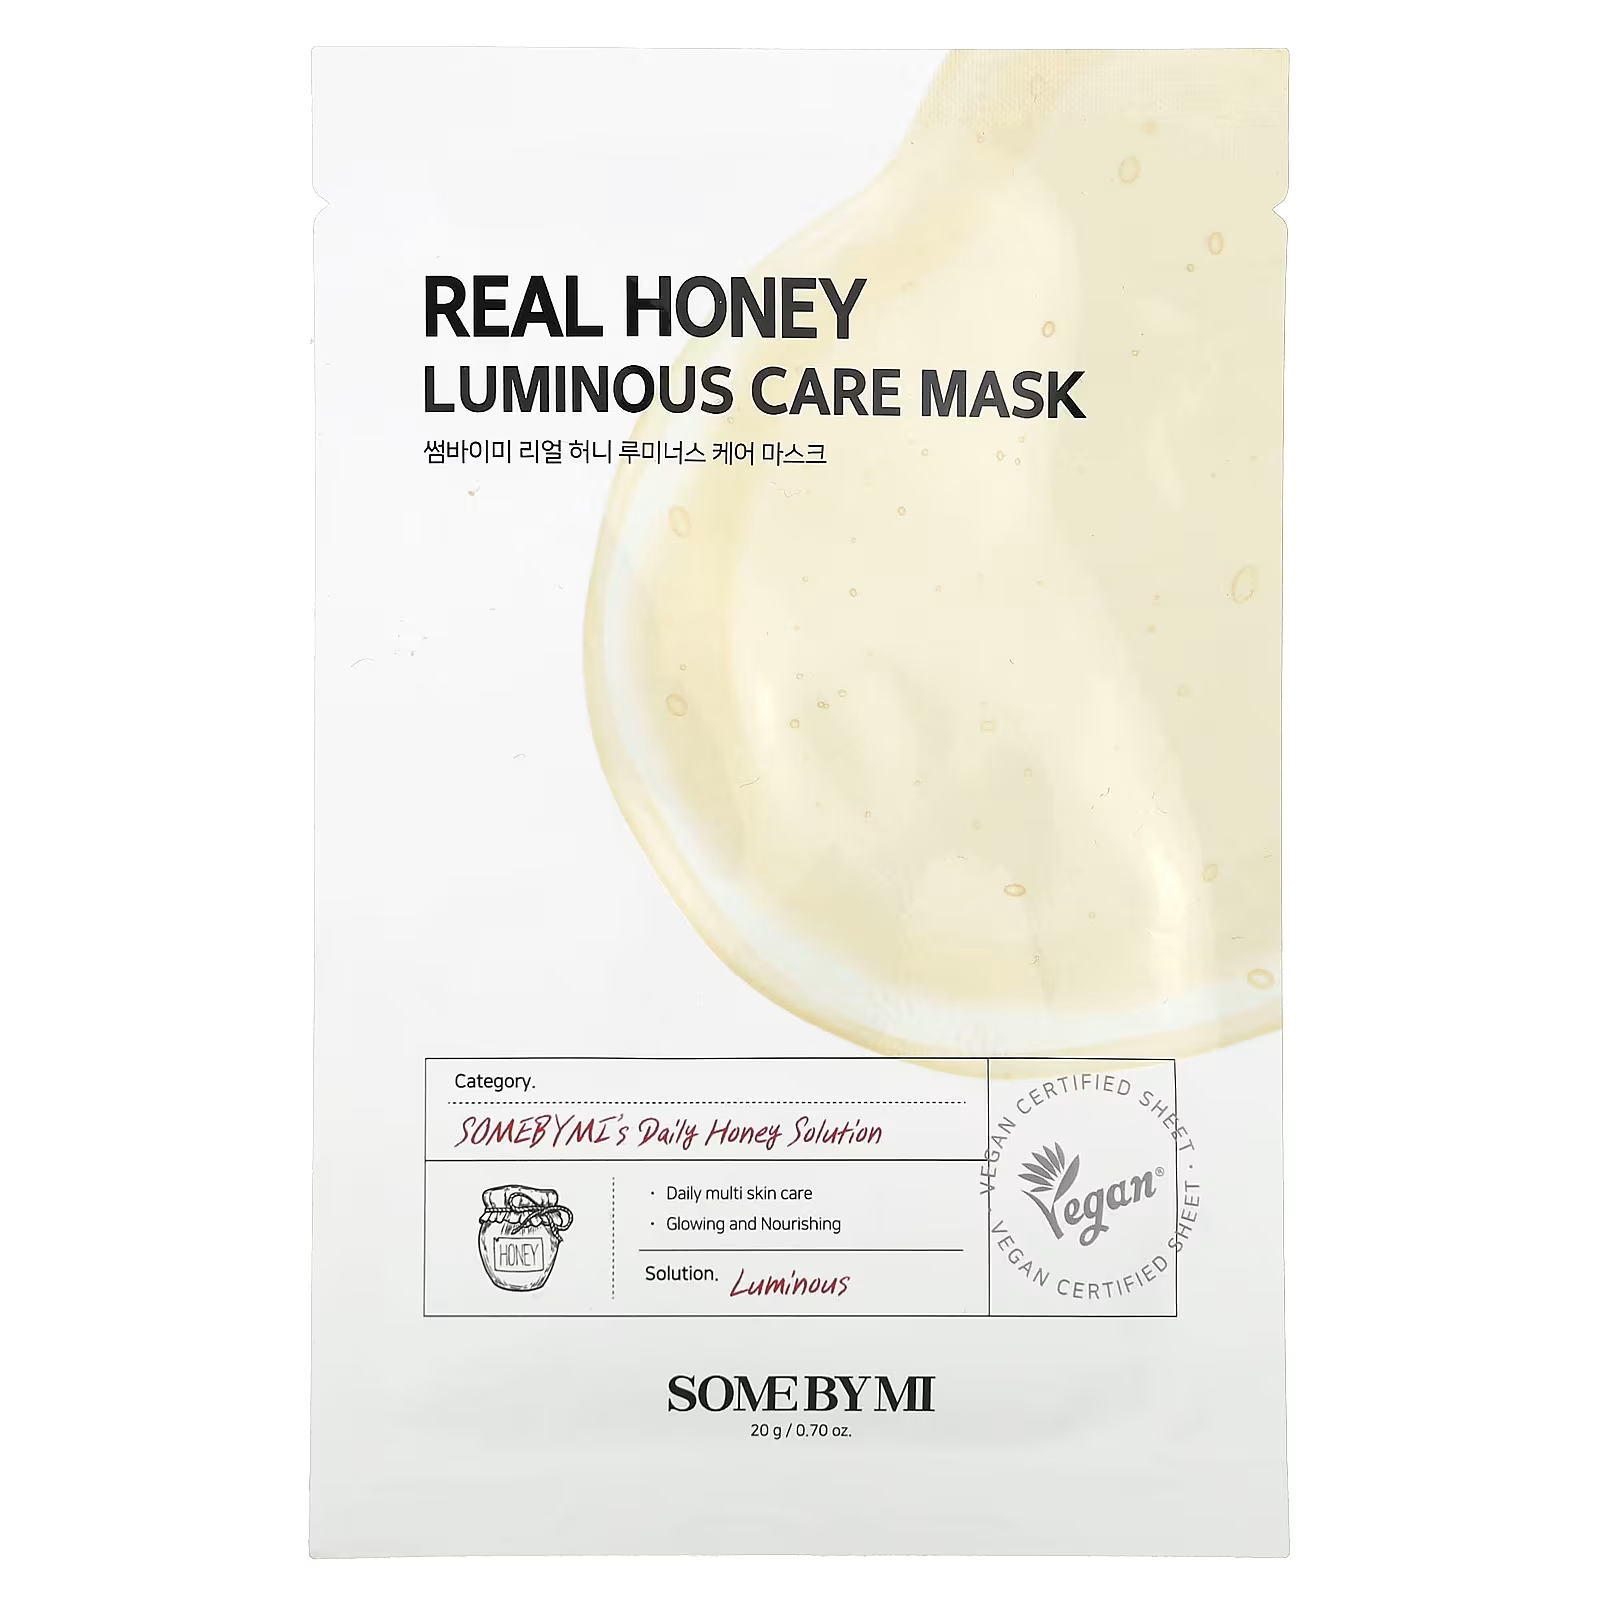 Косметическая маска SOME BY MI Real Honey Luminous Care, 1 лист, 0,70 унции (20 г) some by mi успокаивающая косметическая маска с натуральным алоэ 1 шт 20 г 0 7 унции